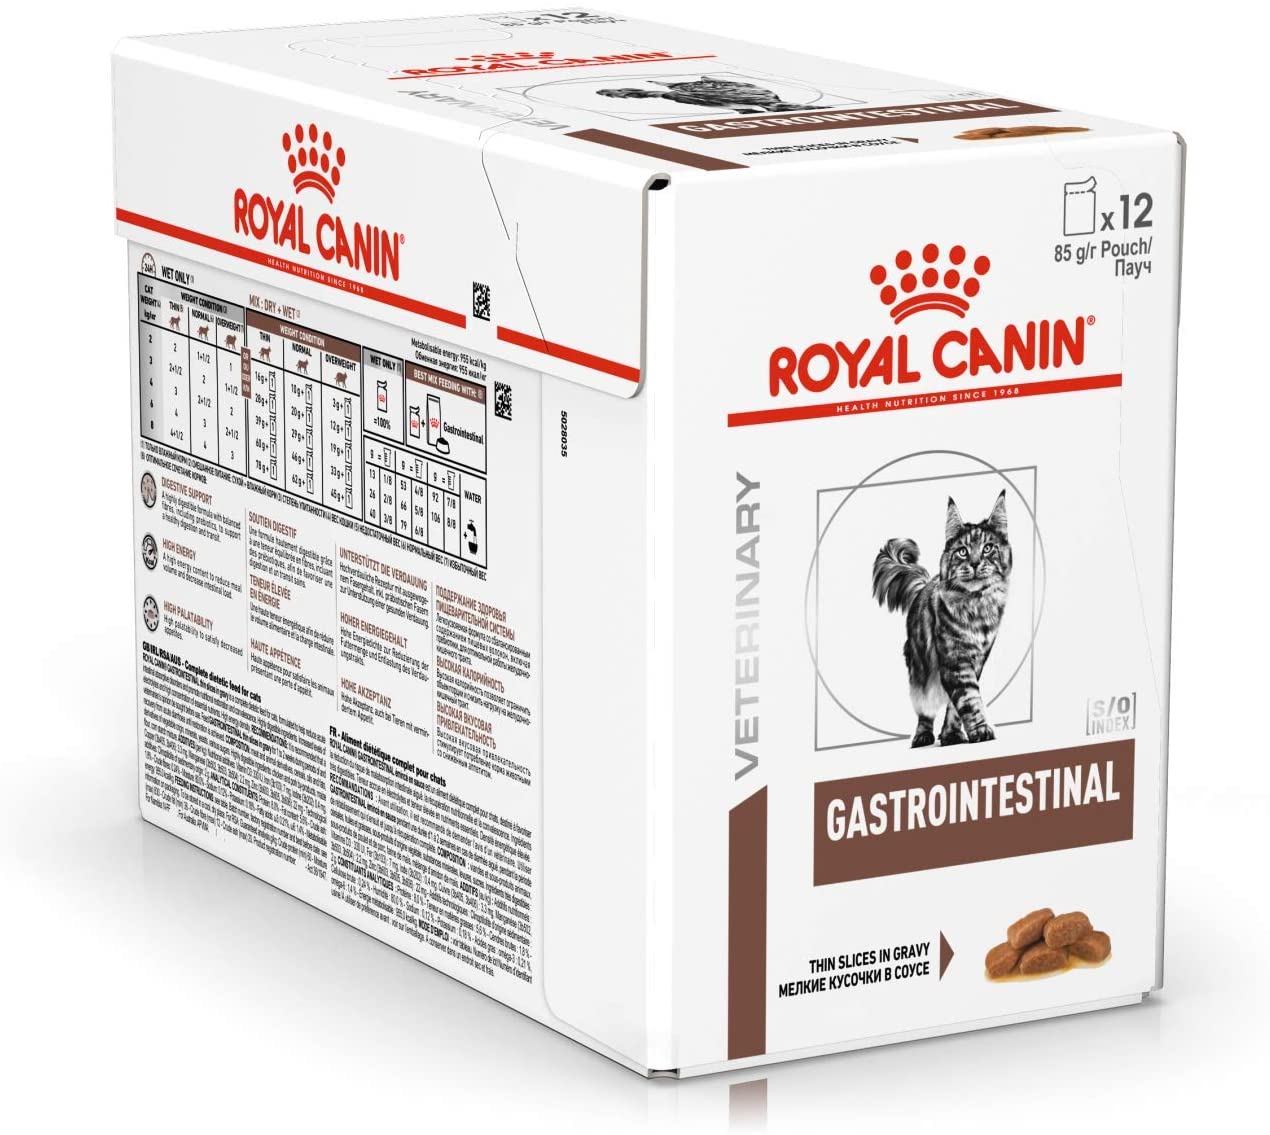  Royal Canin C-58398 Diet Feline Gastro Intestinal, caja con 12 sobres de 100 gr 